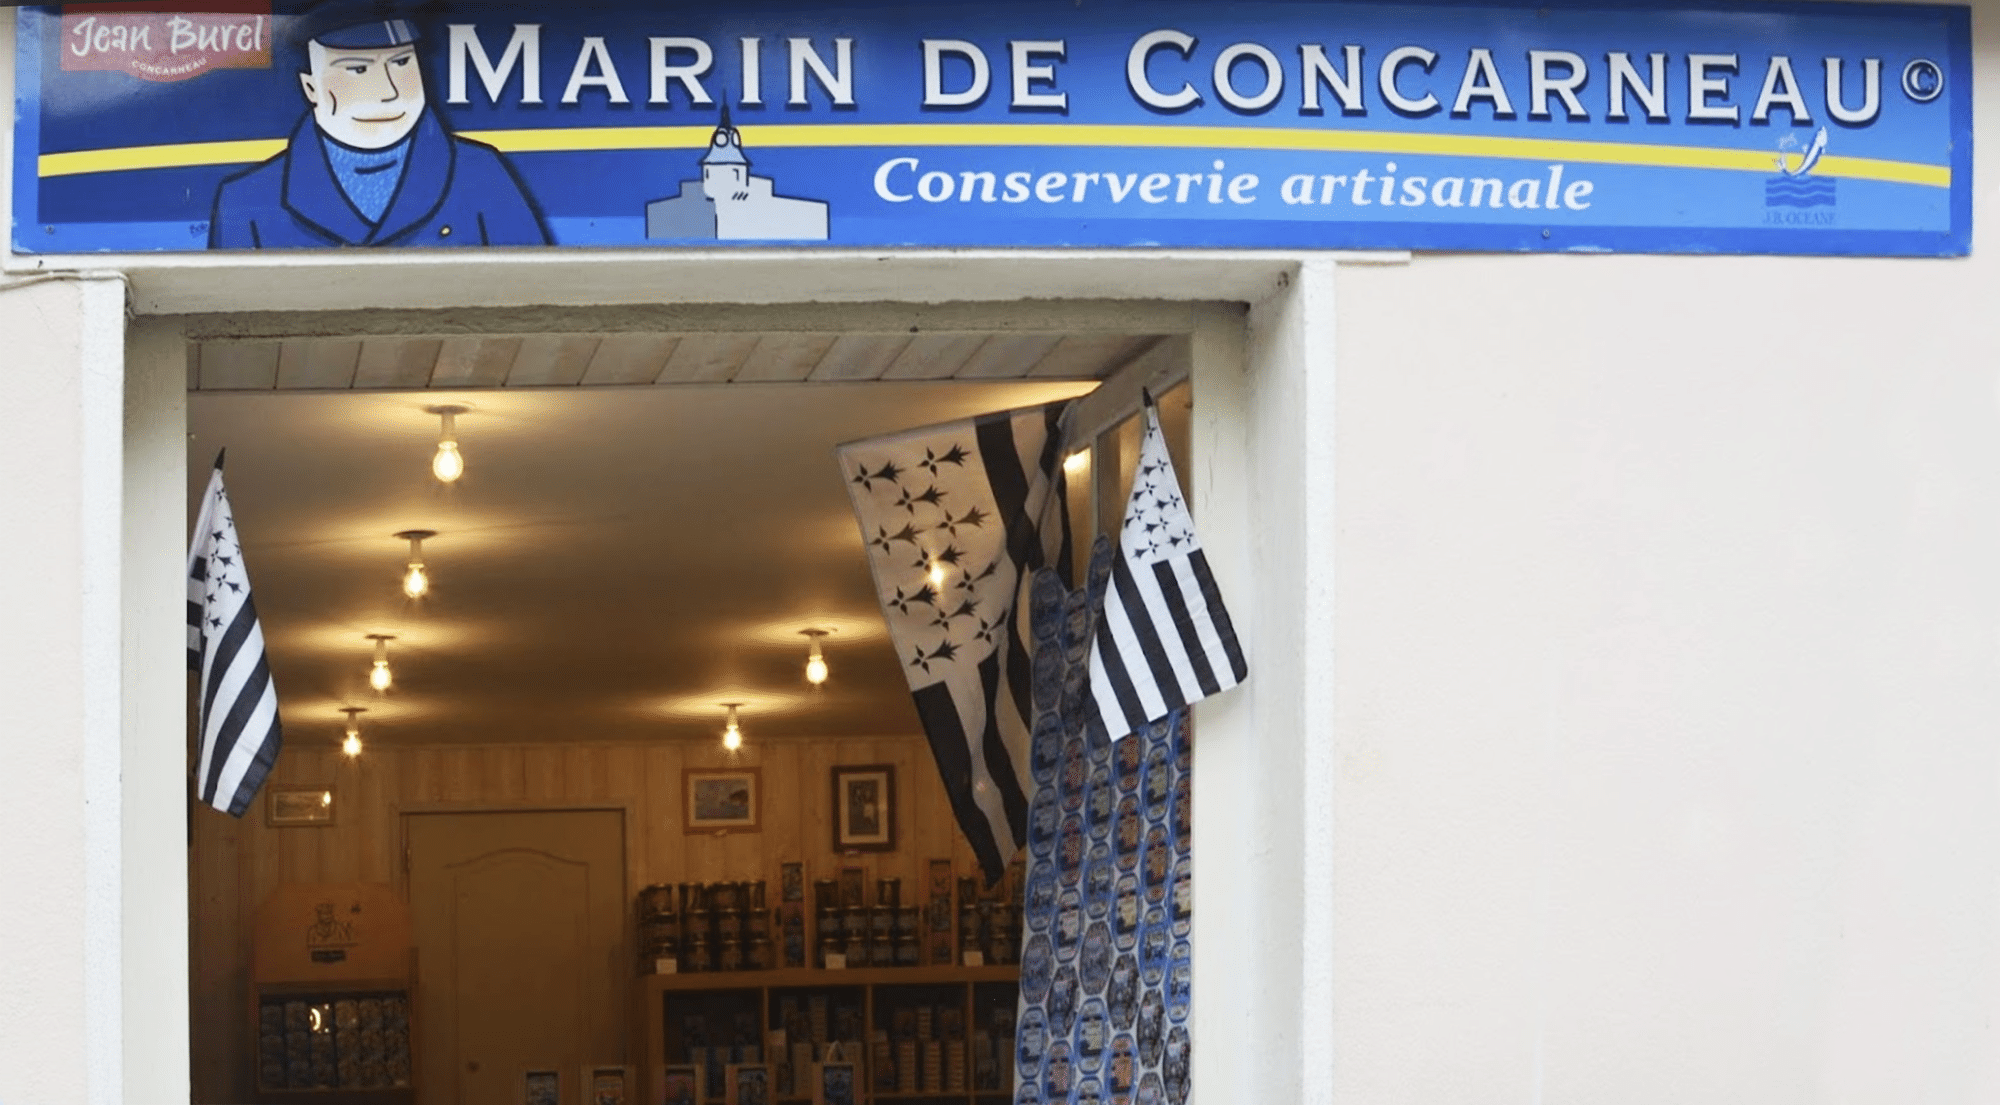 Negozio Jean Burel Ville Close Concarneau